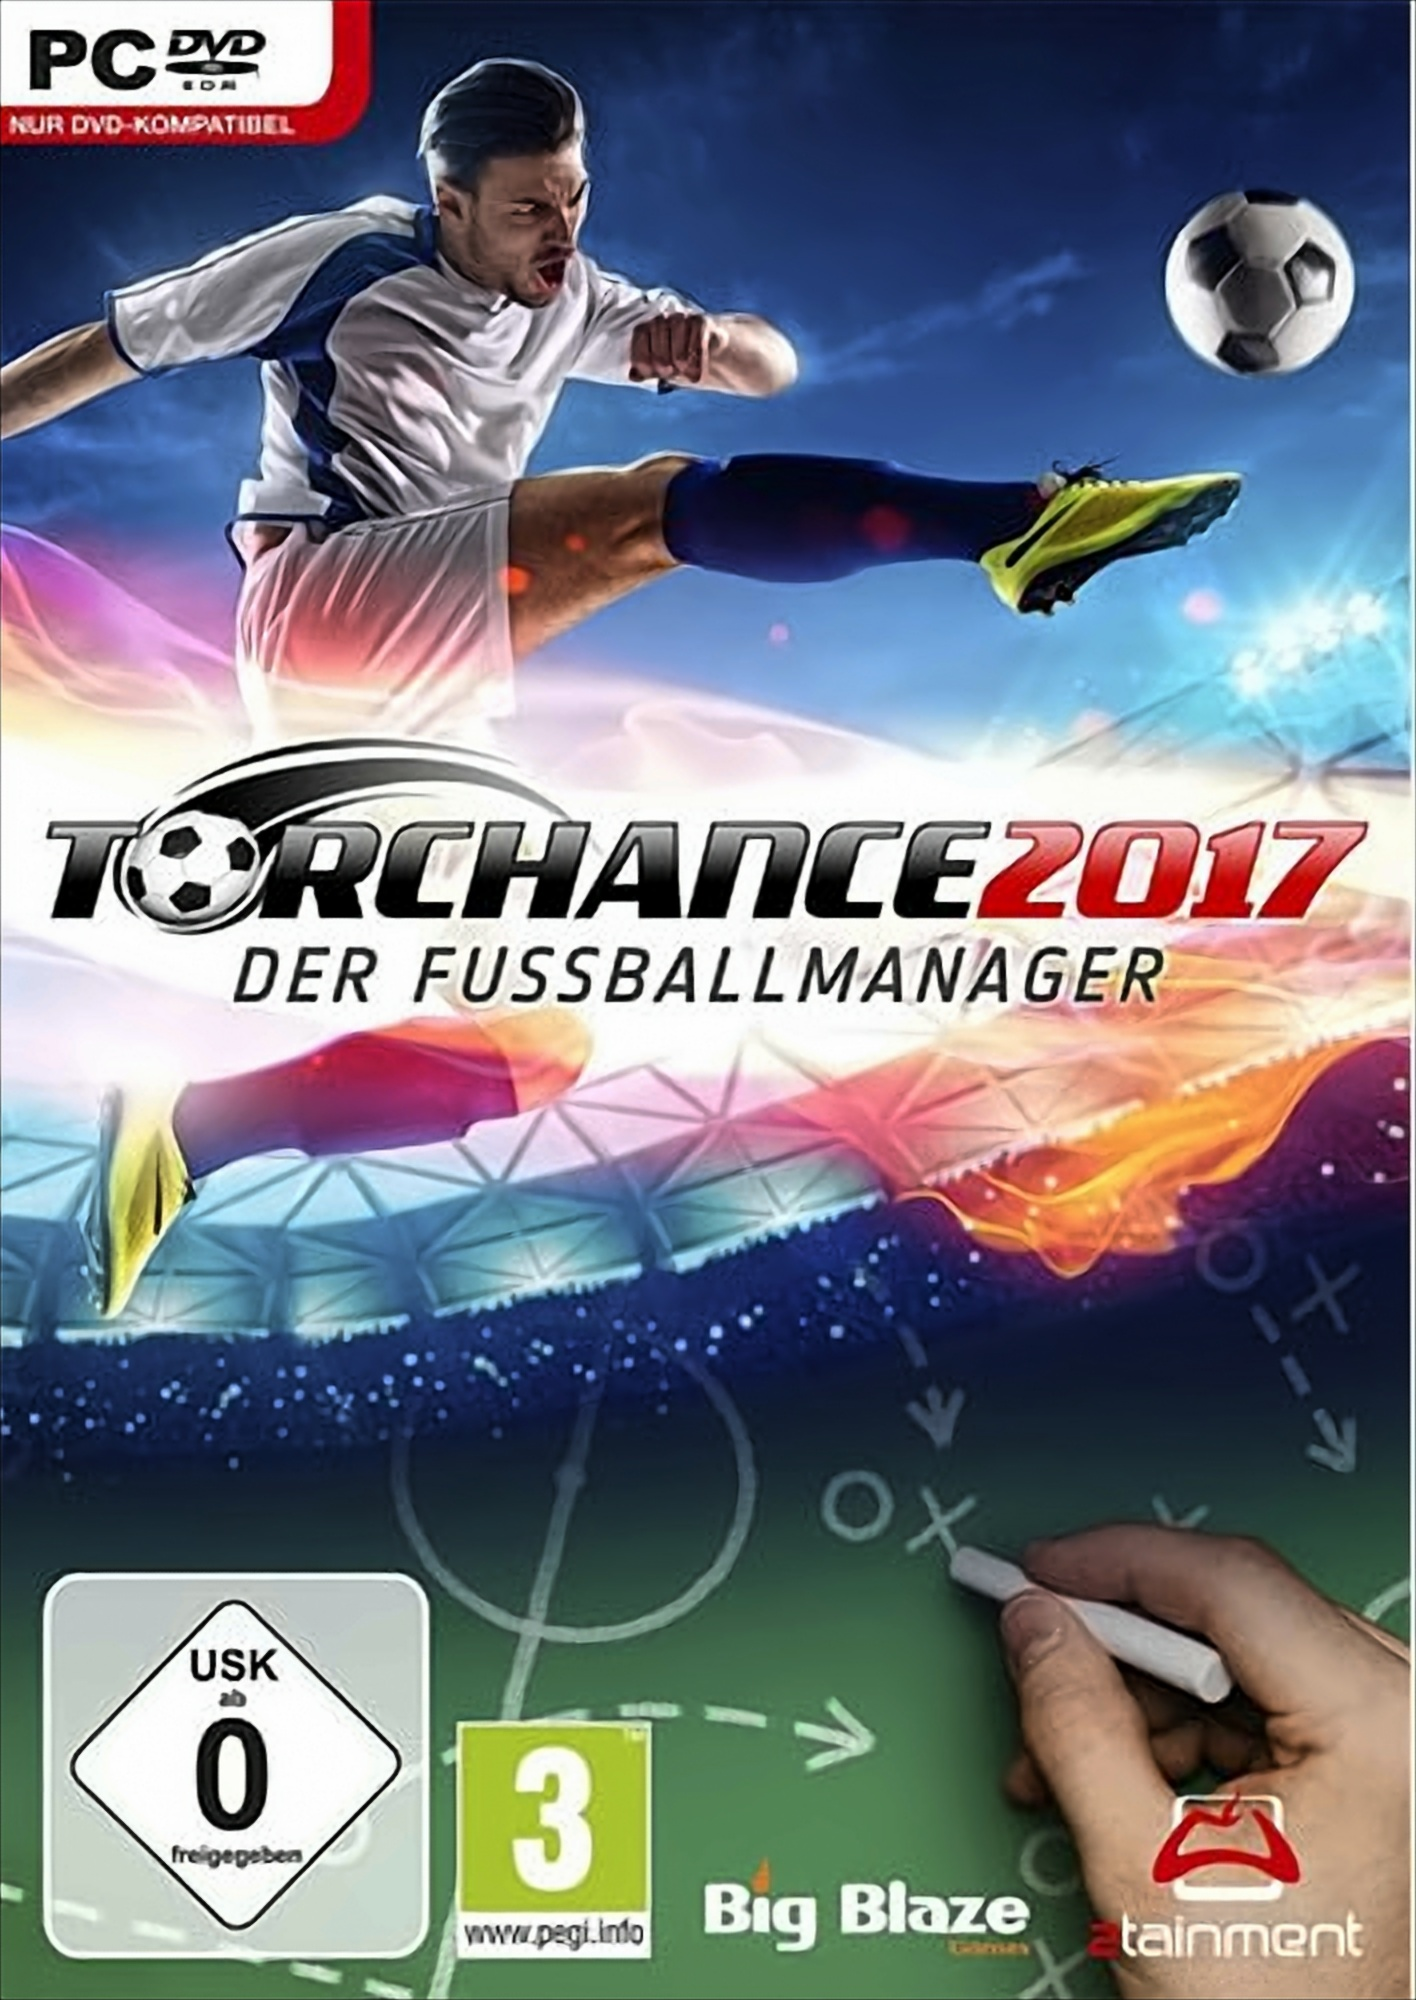 [PC] Fußballmanager Der - Torchance 2017: